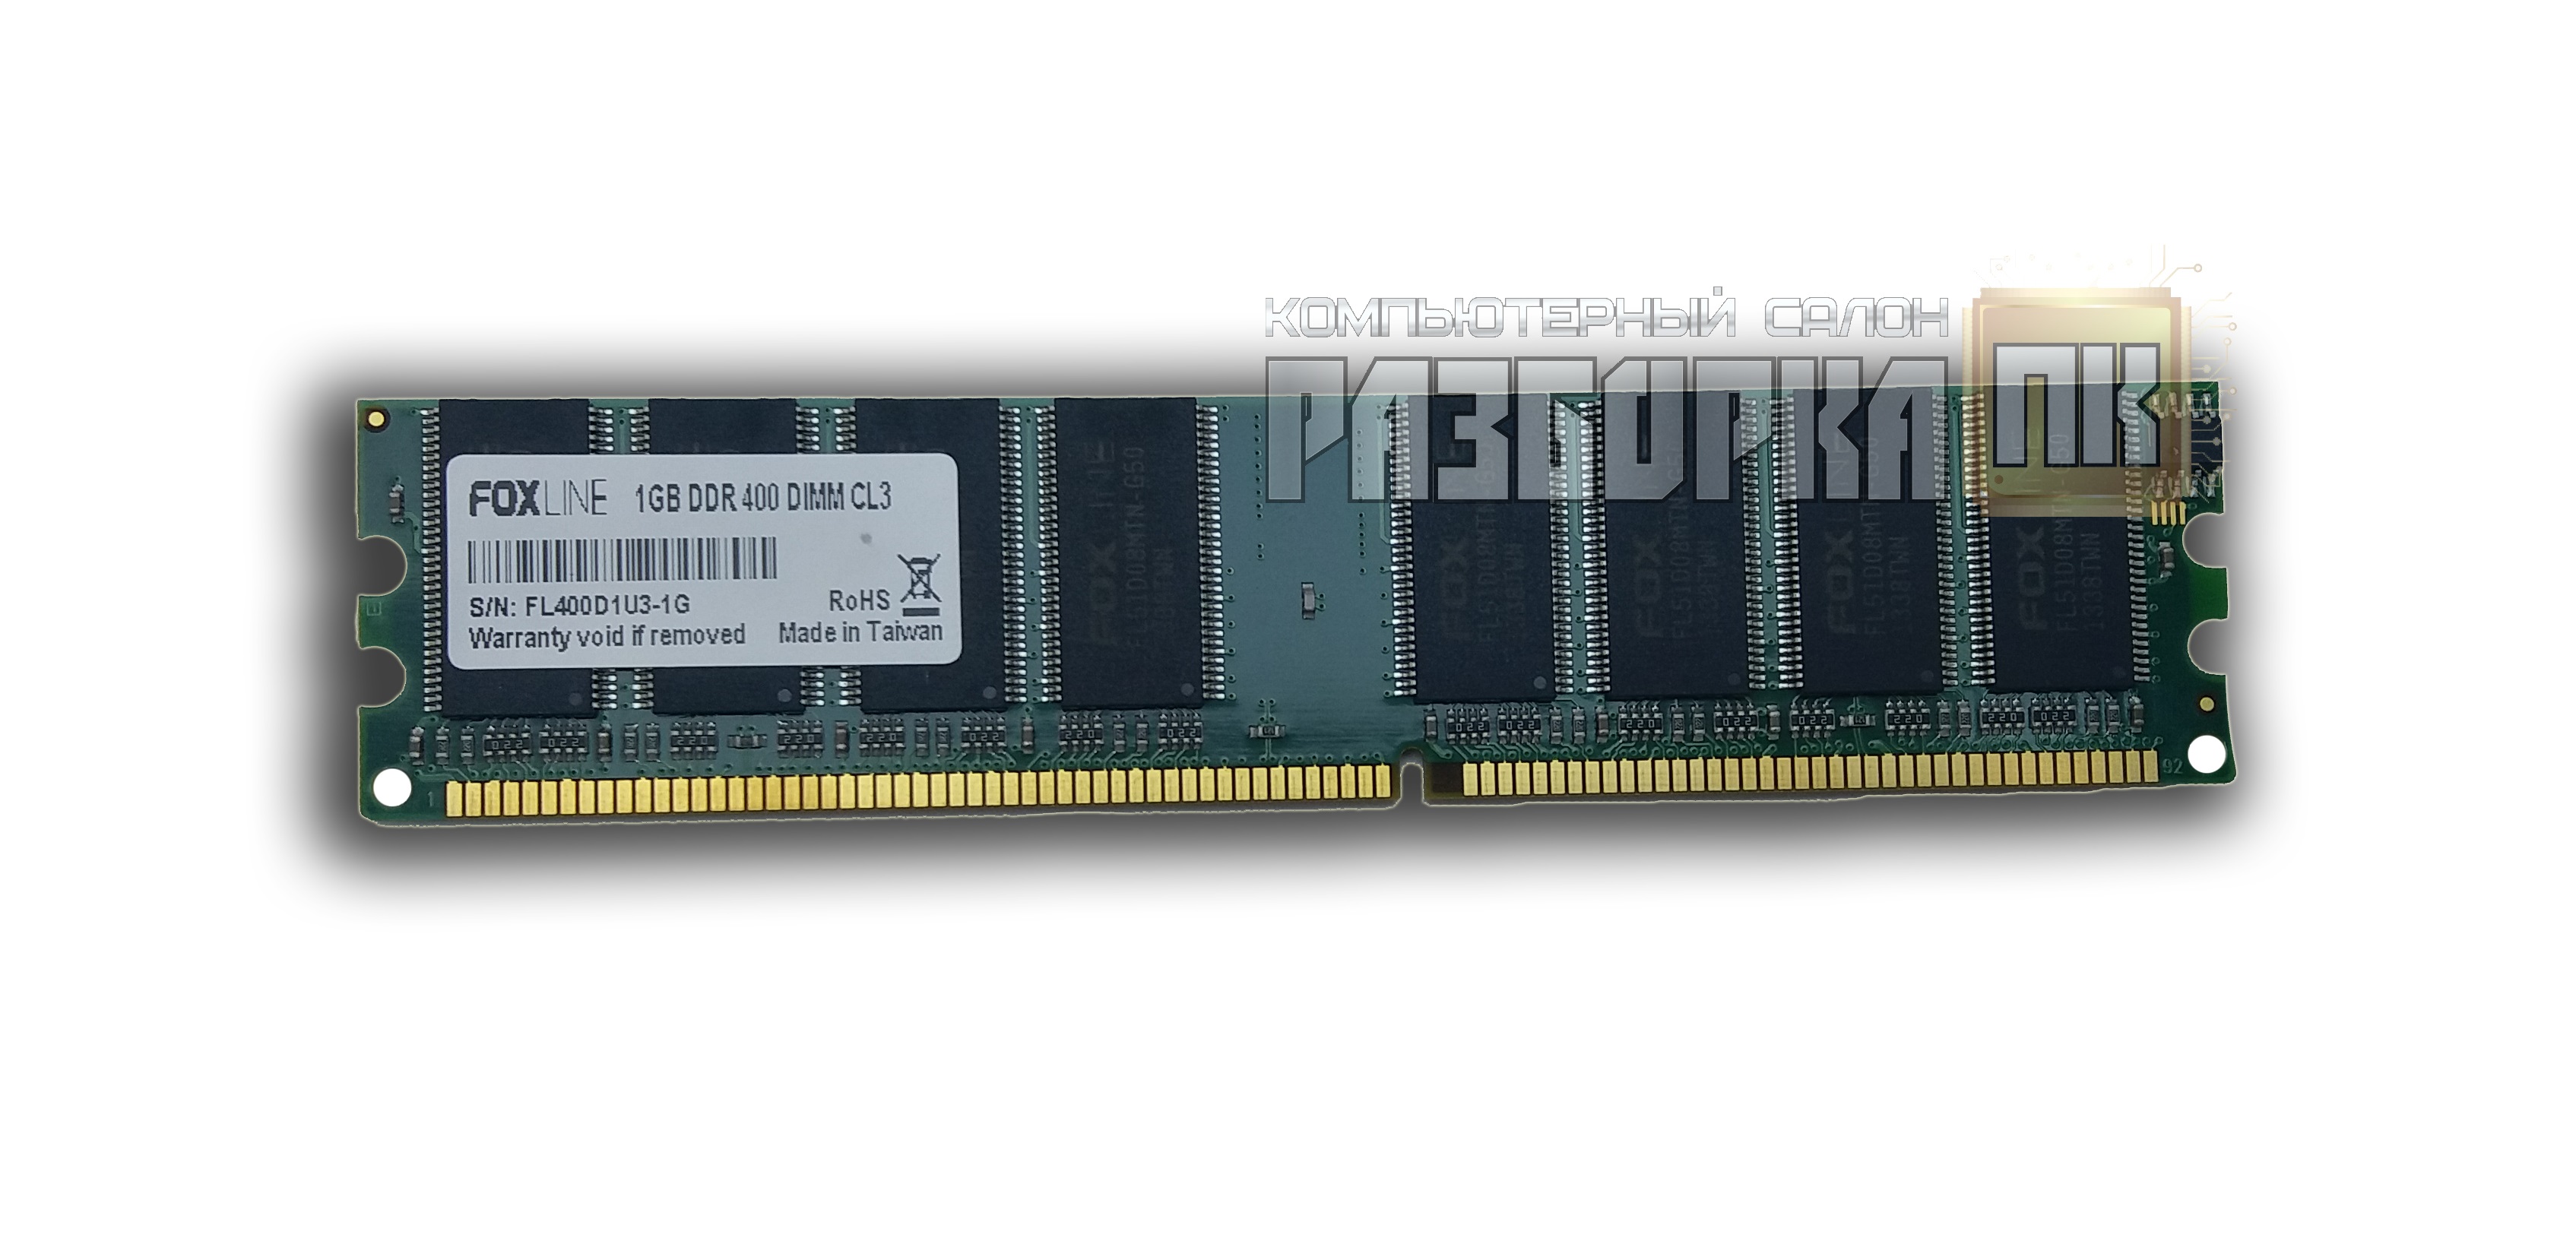 Оперативная память DIMM DDR-I 1 GB PC3200 400Mhz